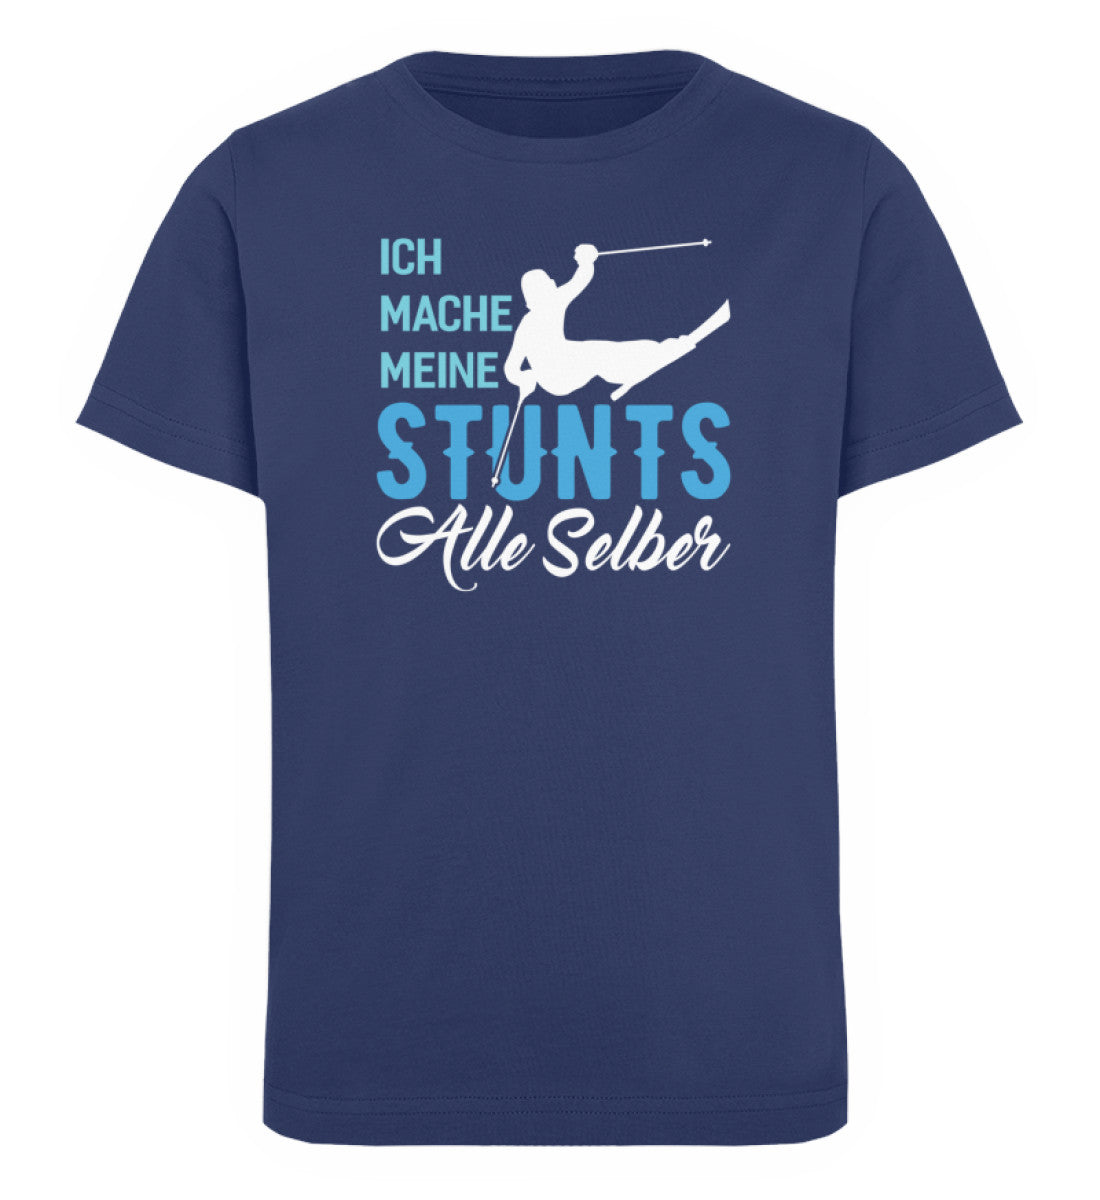 Ich mache meine Stunts alle selber-(S.K) - Kinder Premium Organic T-Shirt klettern Navyblau